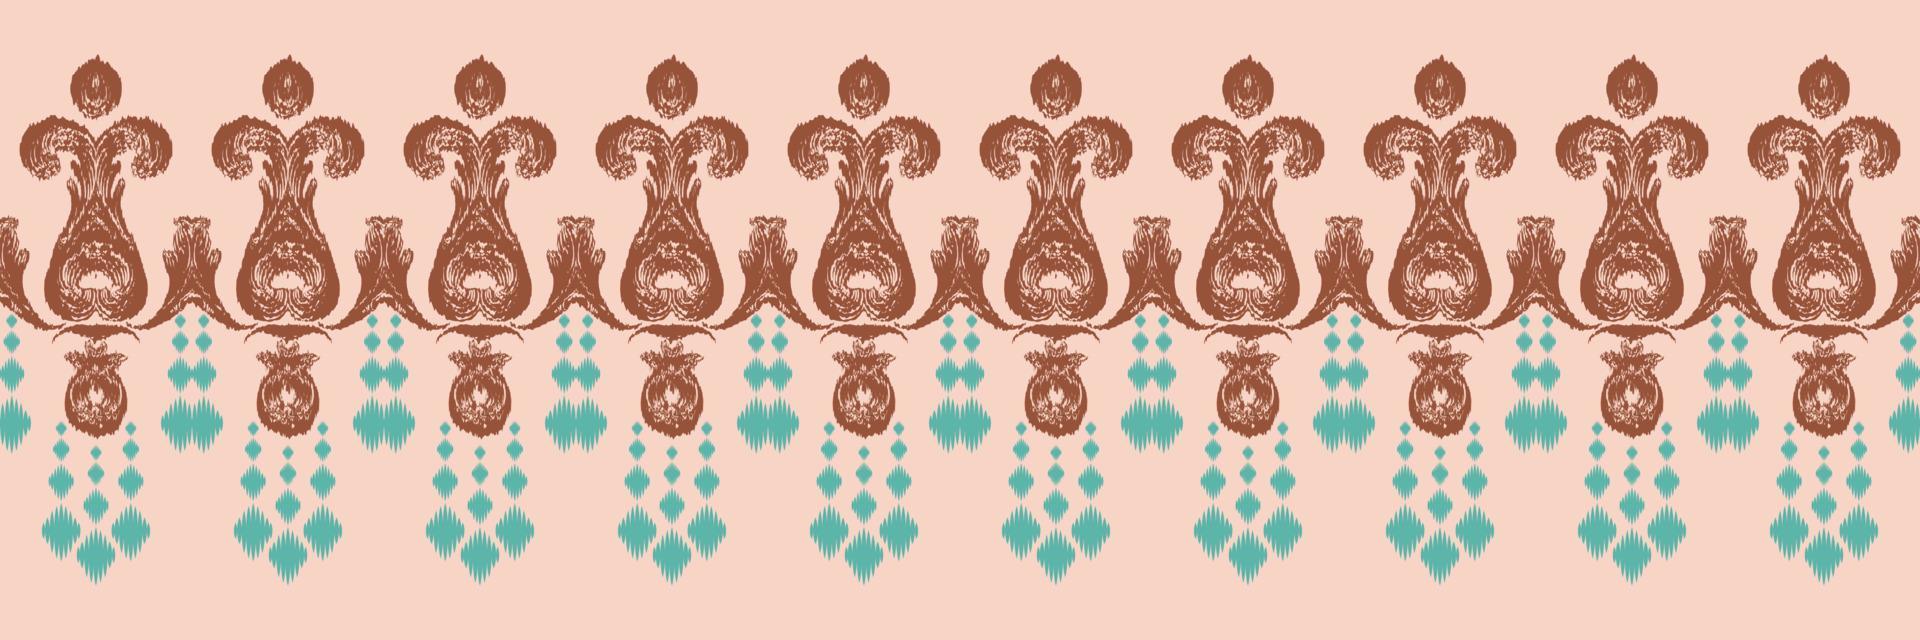 étnico ikat triángulo batik textil de patrones sin fisuras diseño vectorial digital para imprimir sari kurti borneo borde de tela símbolos de pincel muestras de algodón vector